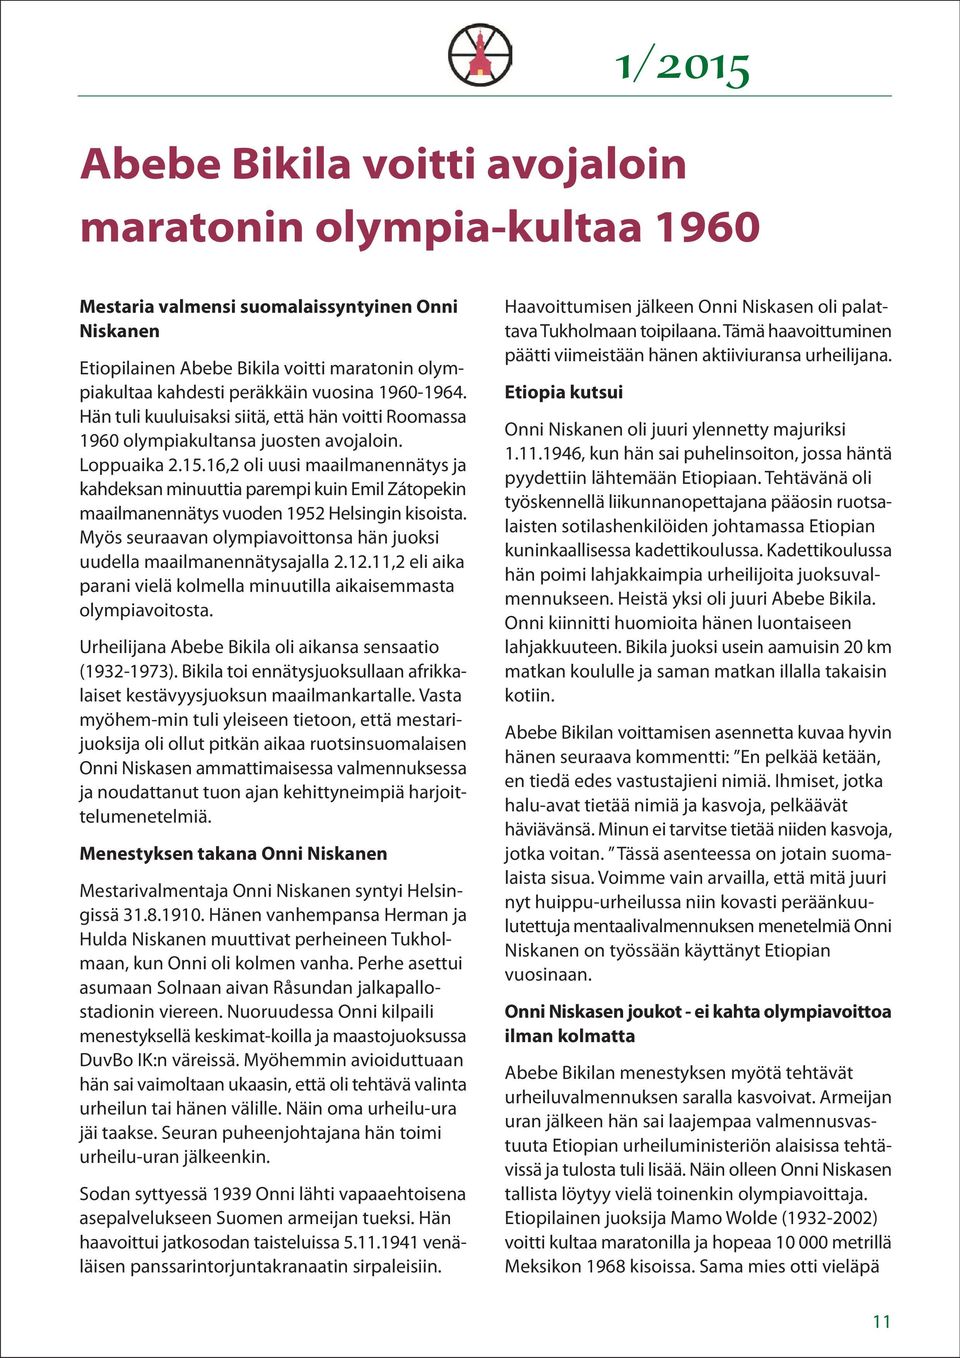 16,2 oli uusi maailmanennätys ja kahdeksan minuuttia parempi kuin Emil Zátopekin maailmanennätys vuoden 1952 Helsingin kisoista.